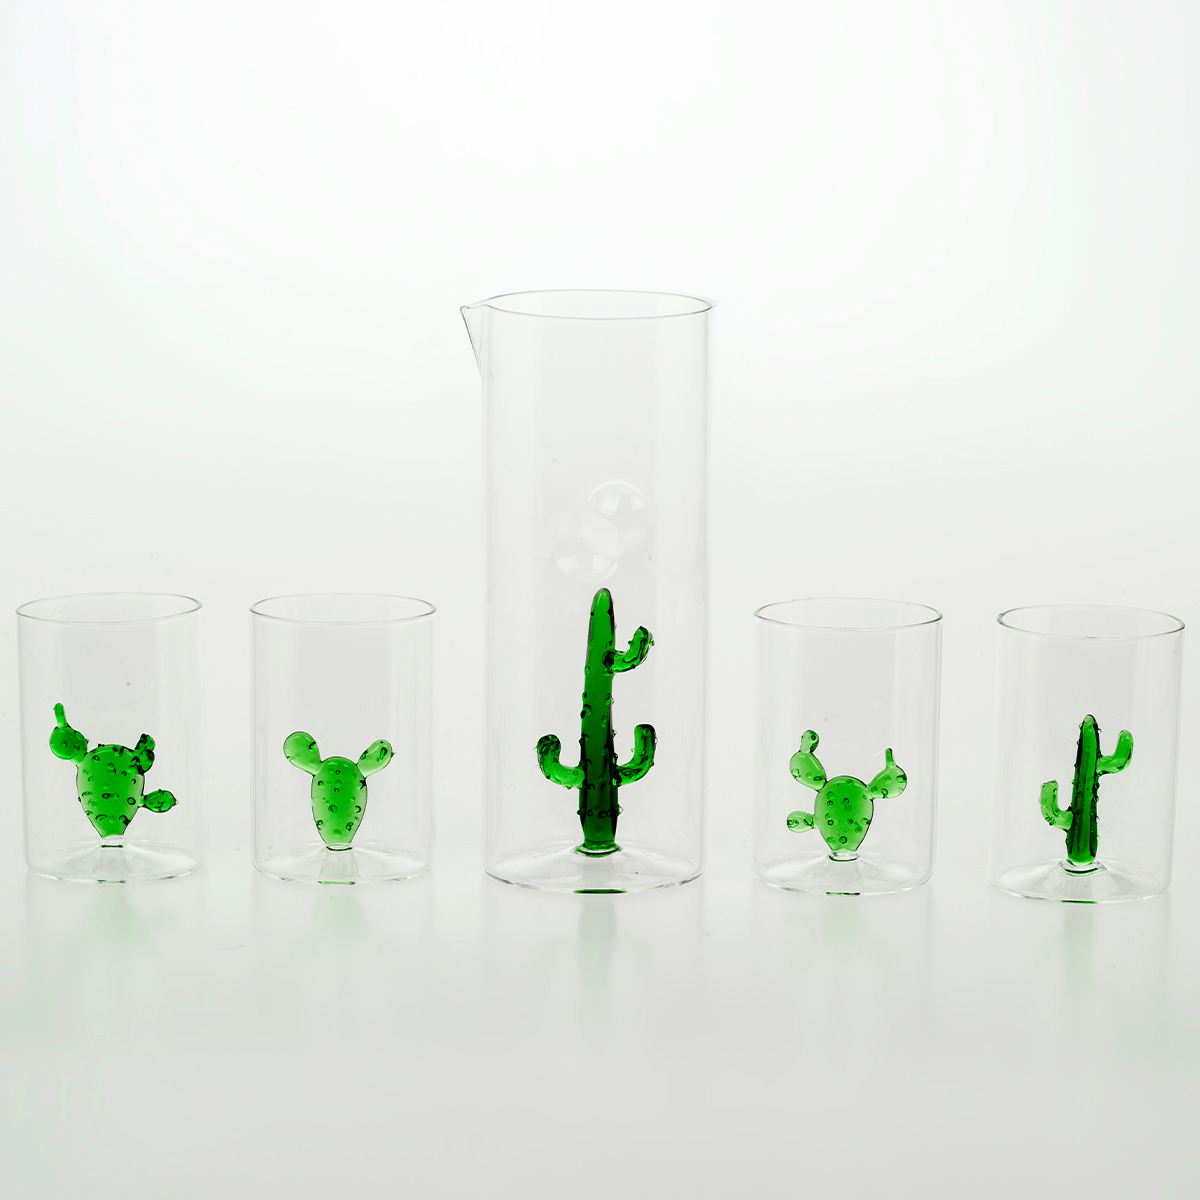 Caraffa design Cactus Verde by Casarialto